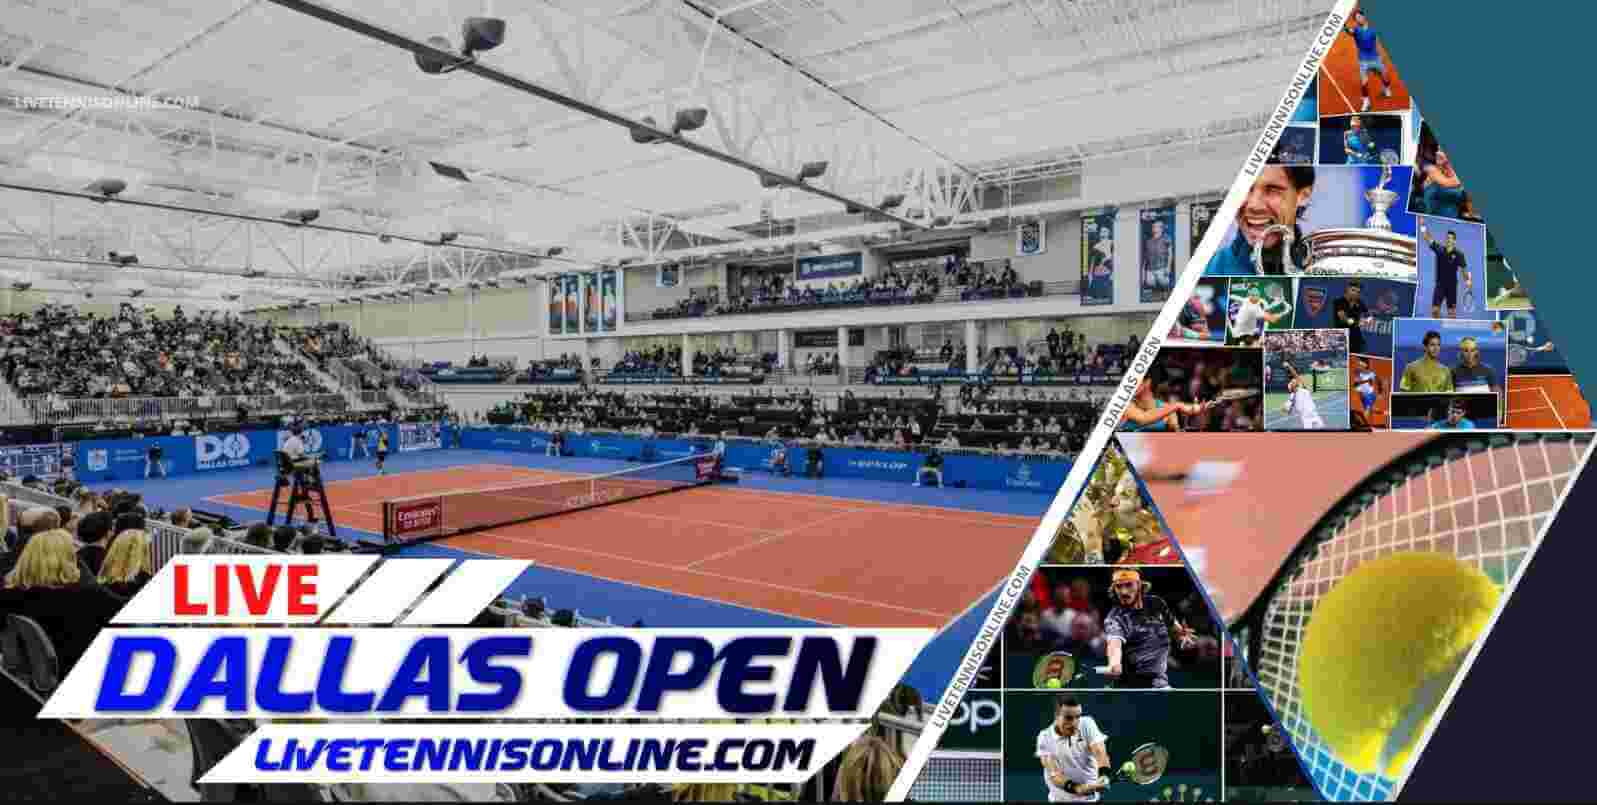 New York Open Tennis 2019 Live Online